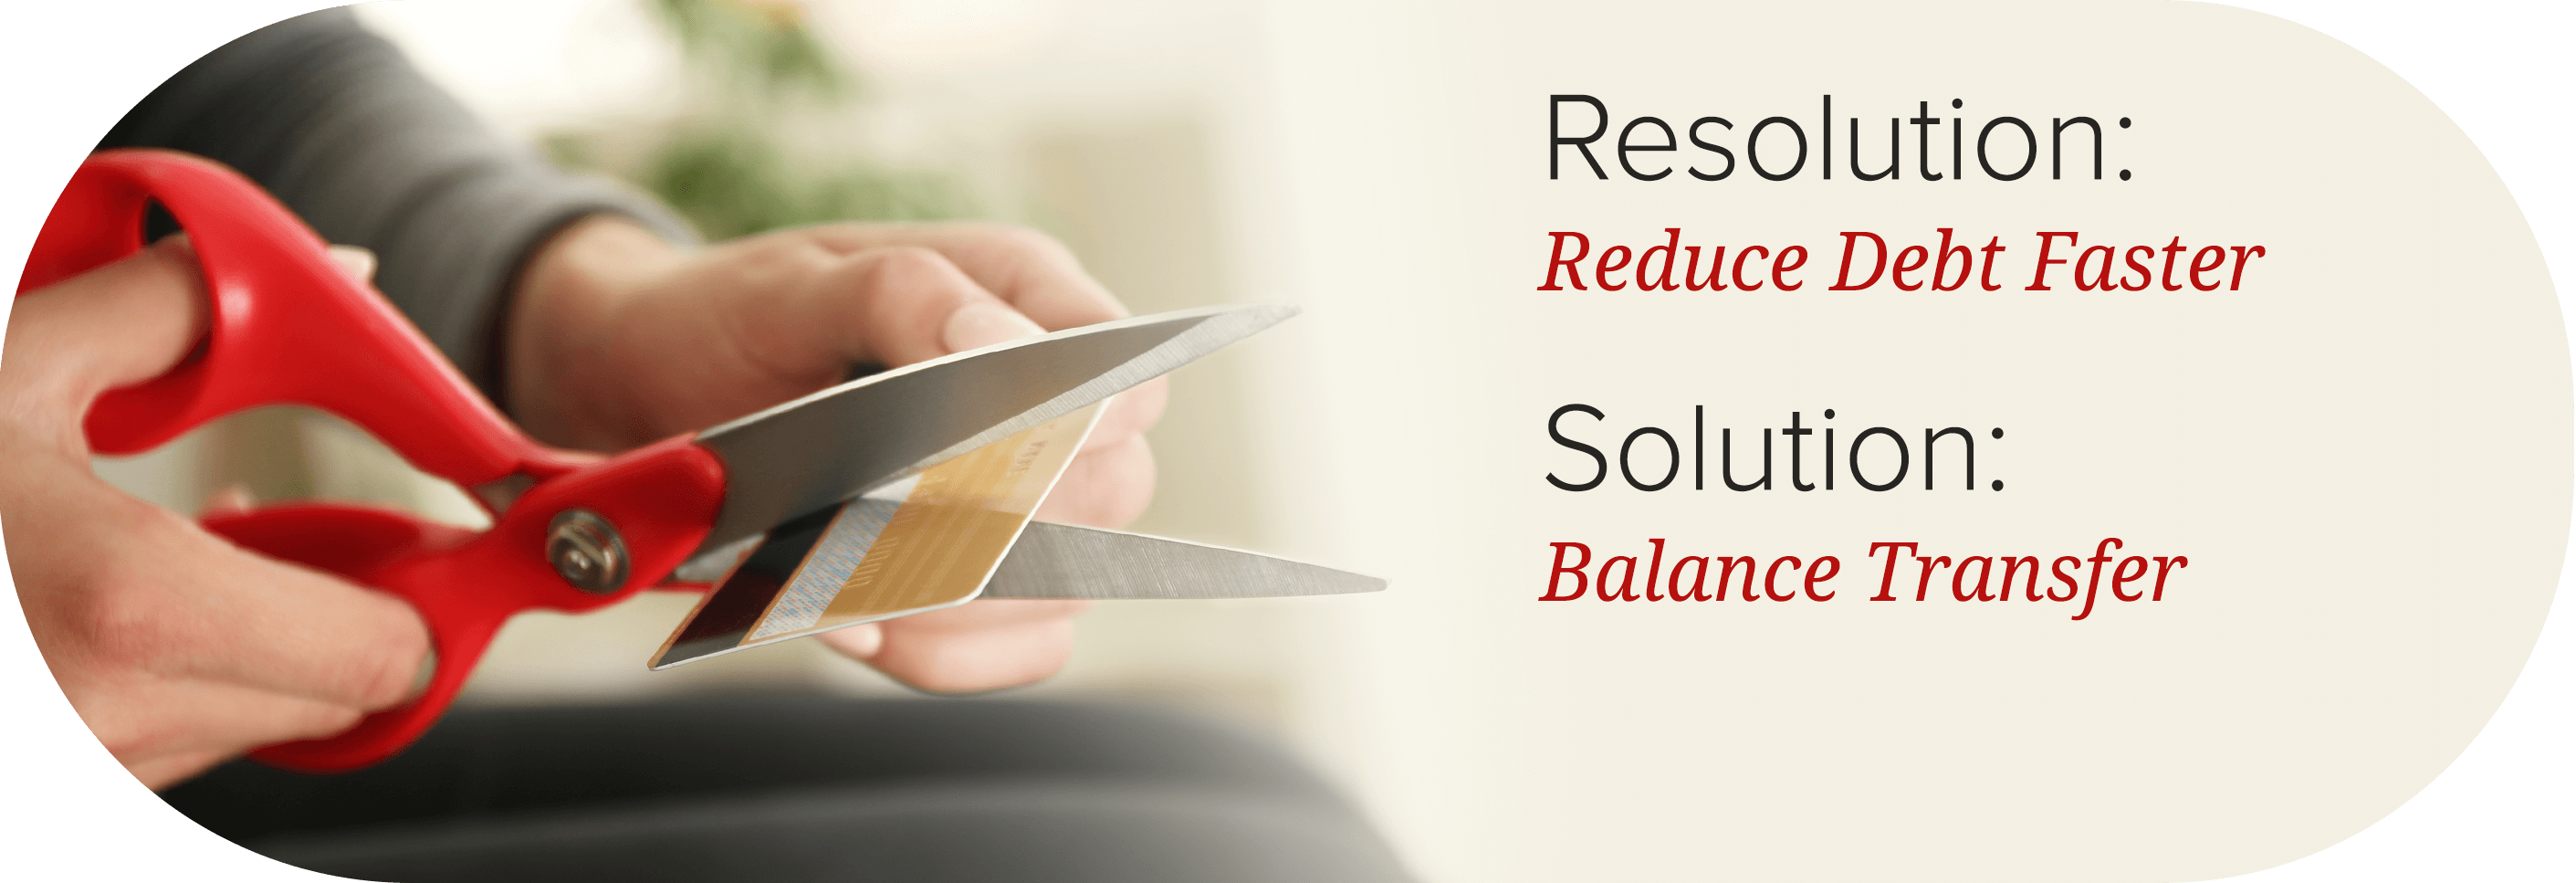 Resolution: Reduce debt faster. Solution: Balance transfer.